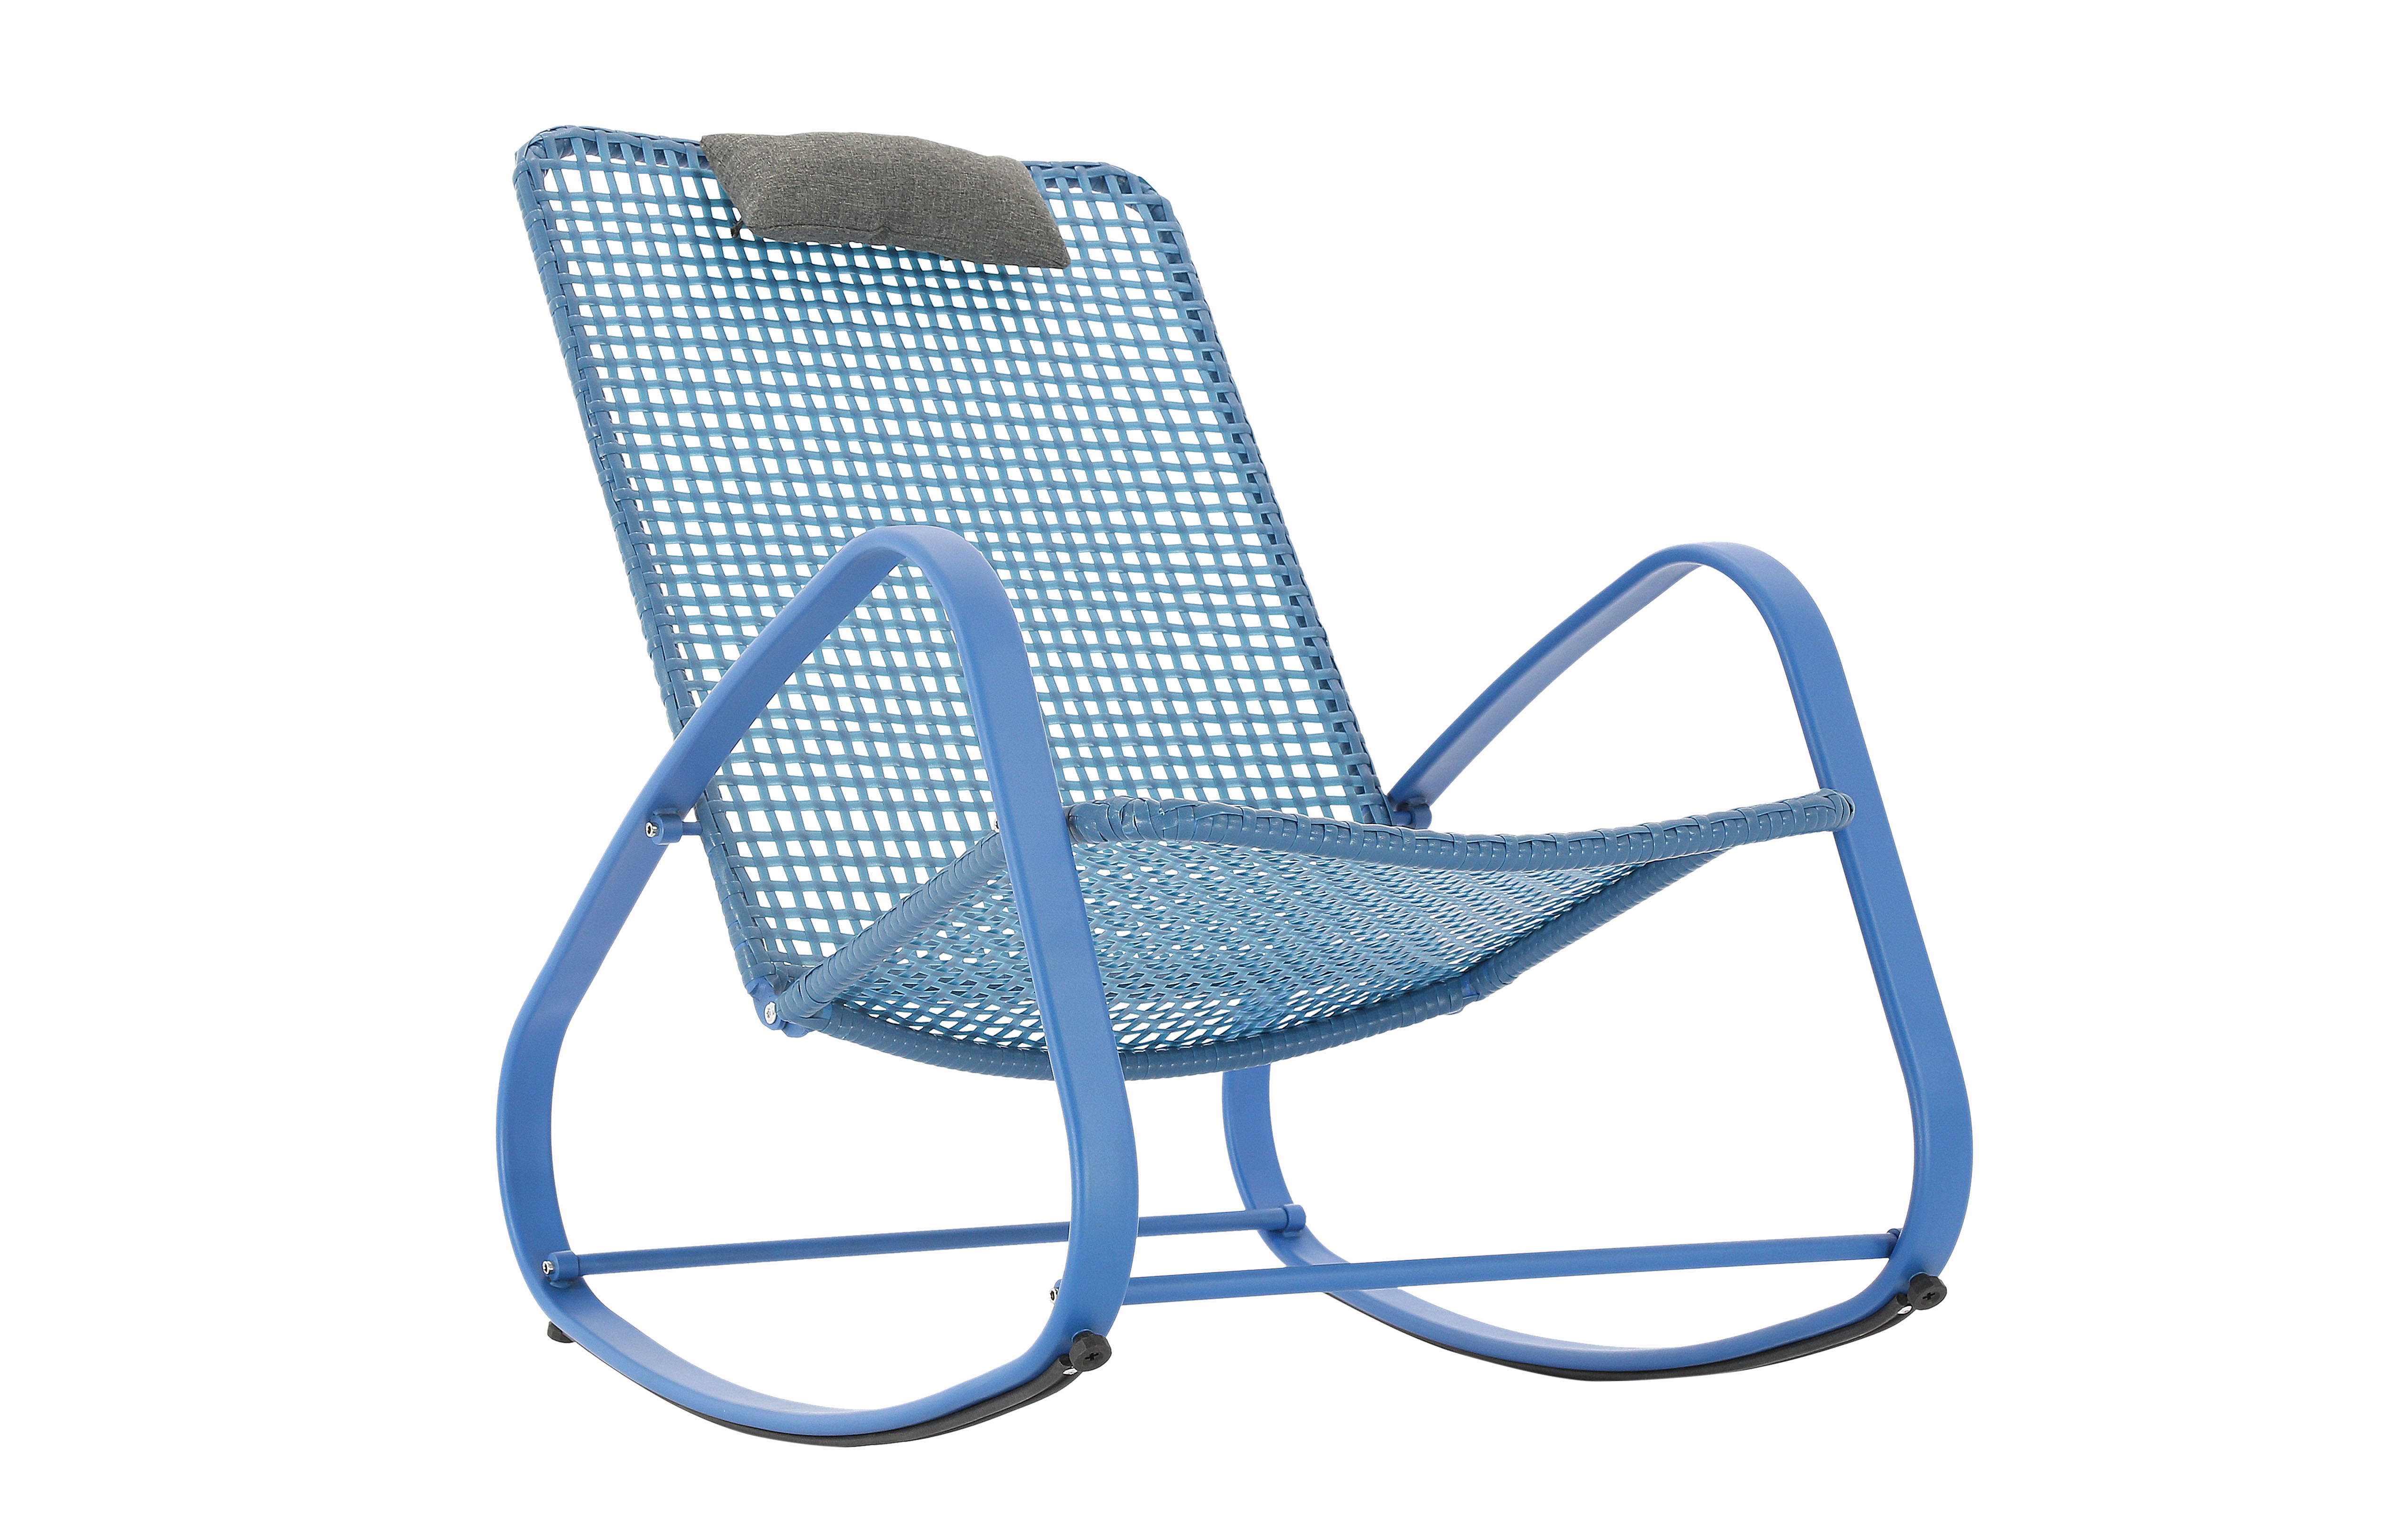 Baner Garden Indoor Outdoor Rocking Lounge Chair Porch Indoor Patio Headrest Furniture, Blue (X62BU) - image 2 of 8